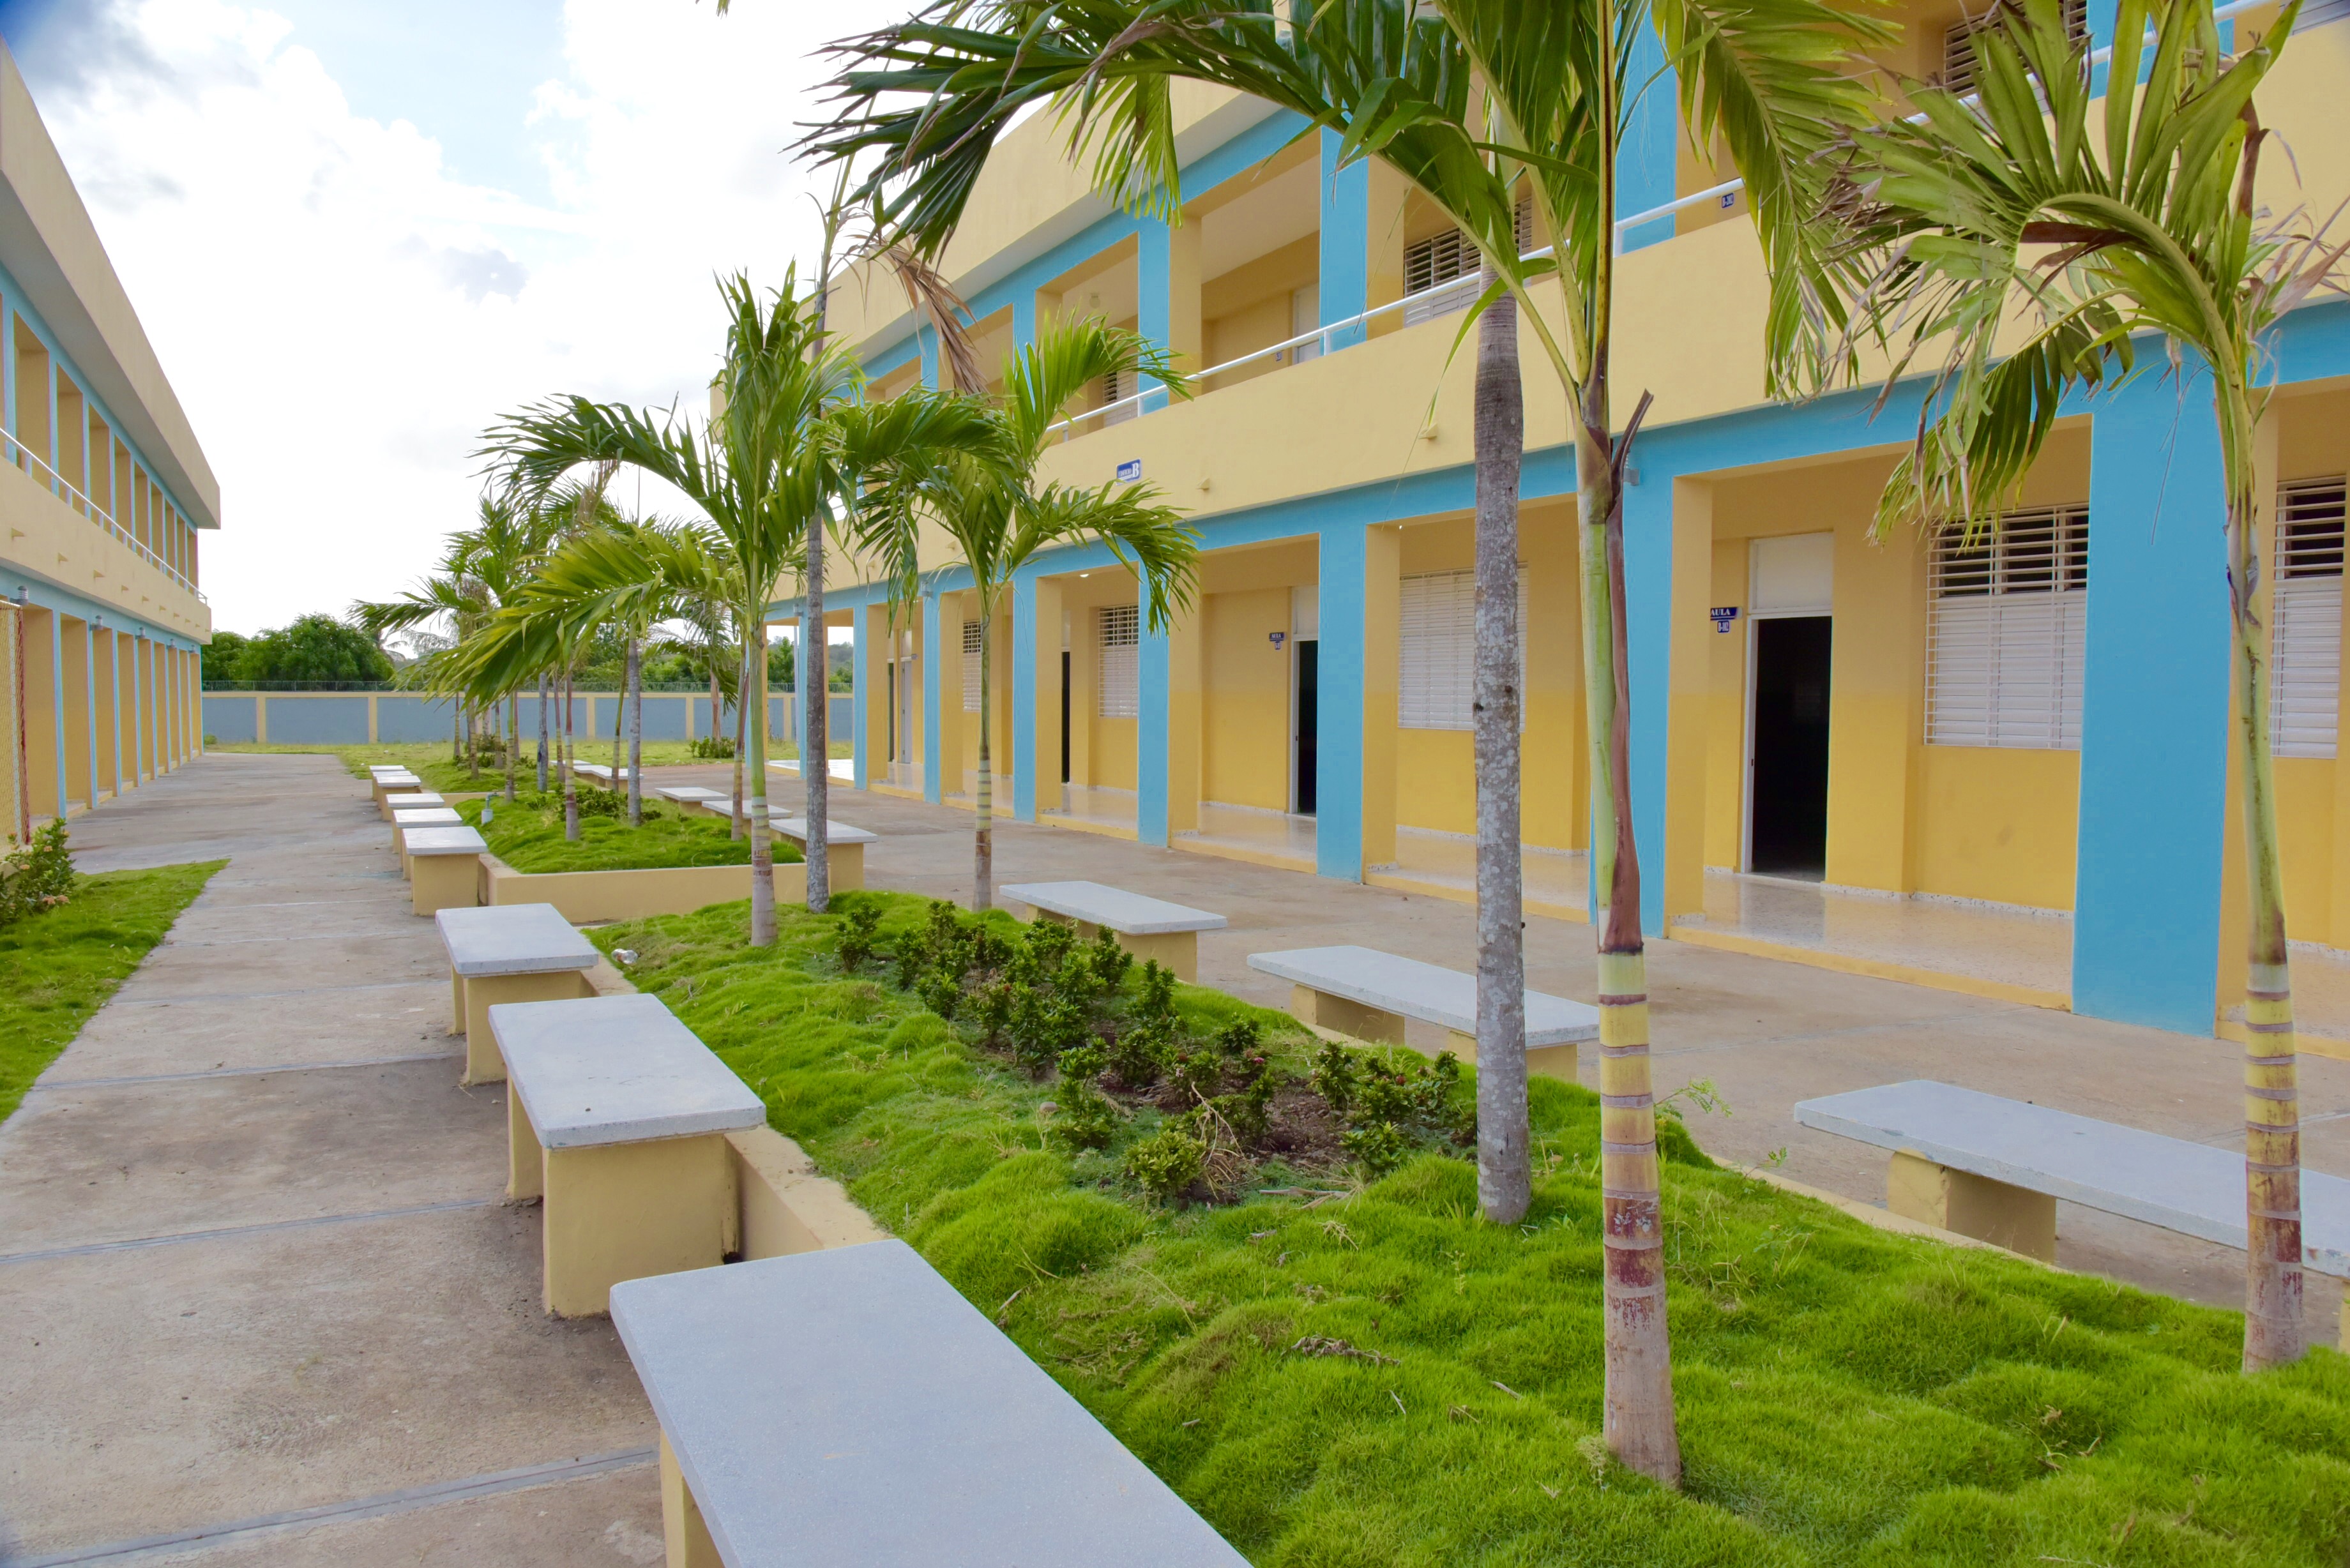 Nuevo centro escolar entregado en Baní por el presidente Danilo Medina